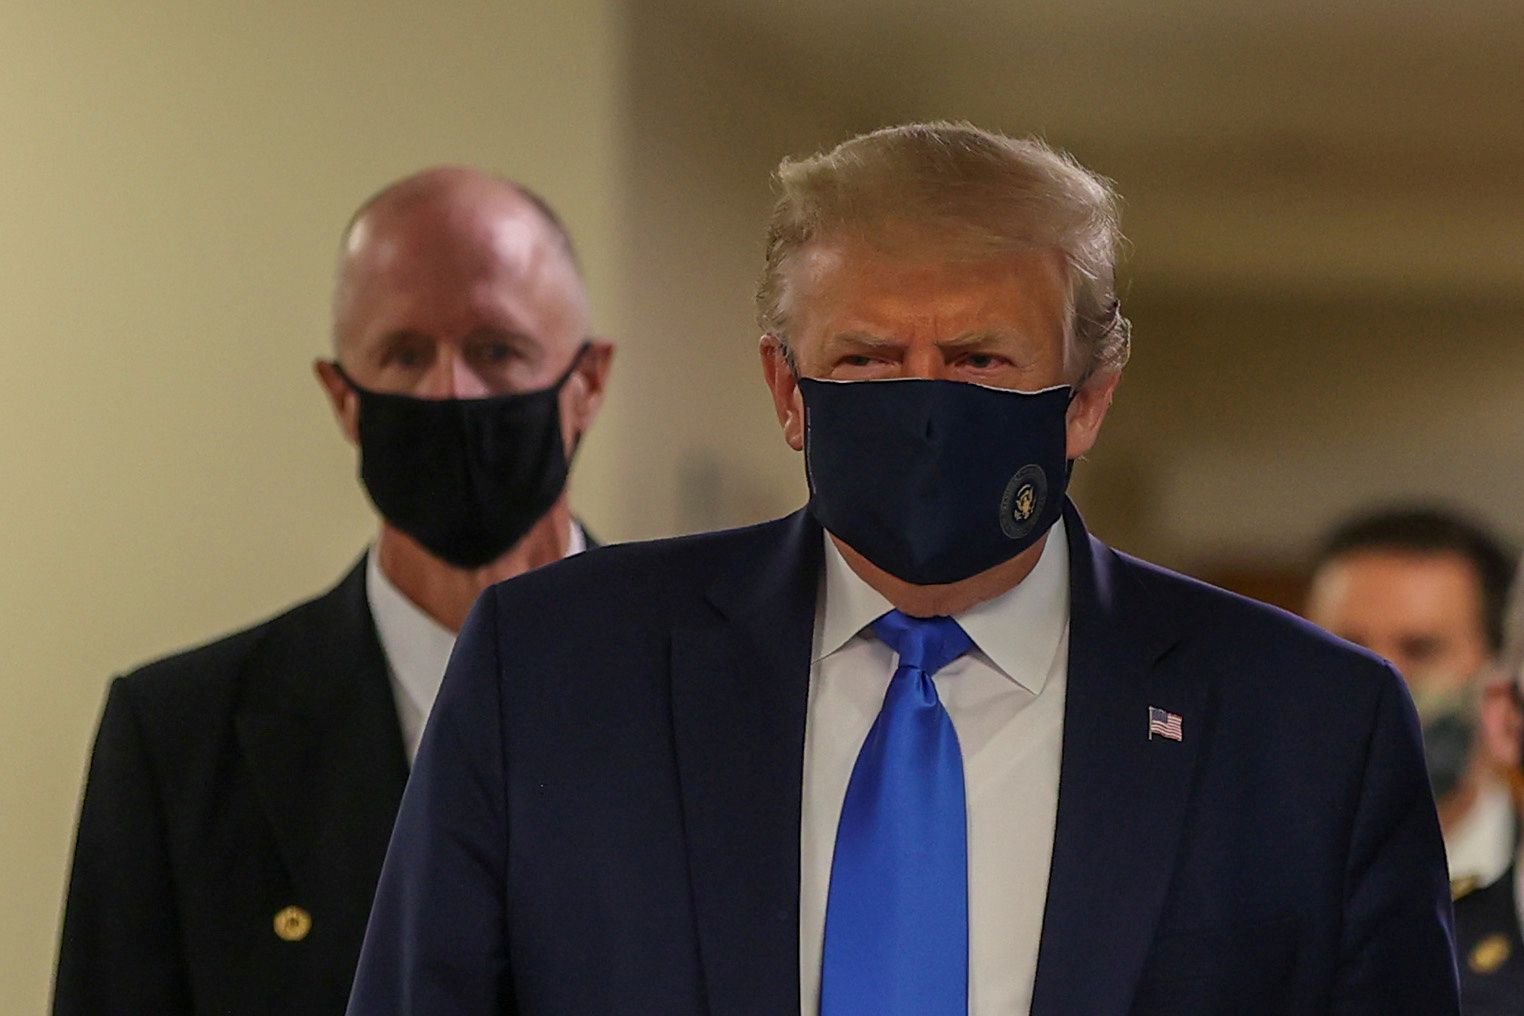 El presidente de los Estados Unidos, Donald Trump, lleva una máscara mientras visita el Centro Médico Militar Nacional Walter Reed en Bethesda, Maryland, el 11 de julio de 2020. REUTERS/Tasos Katopodis